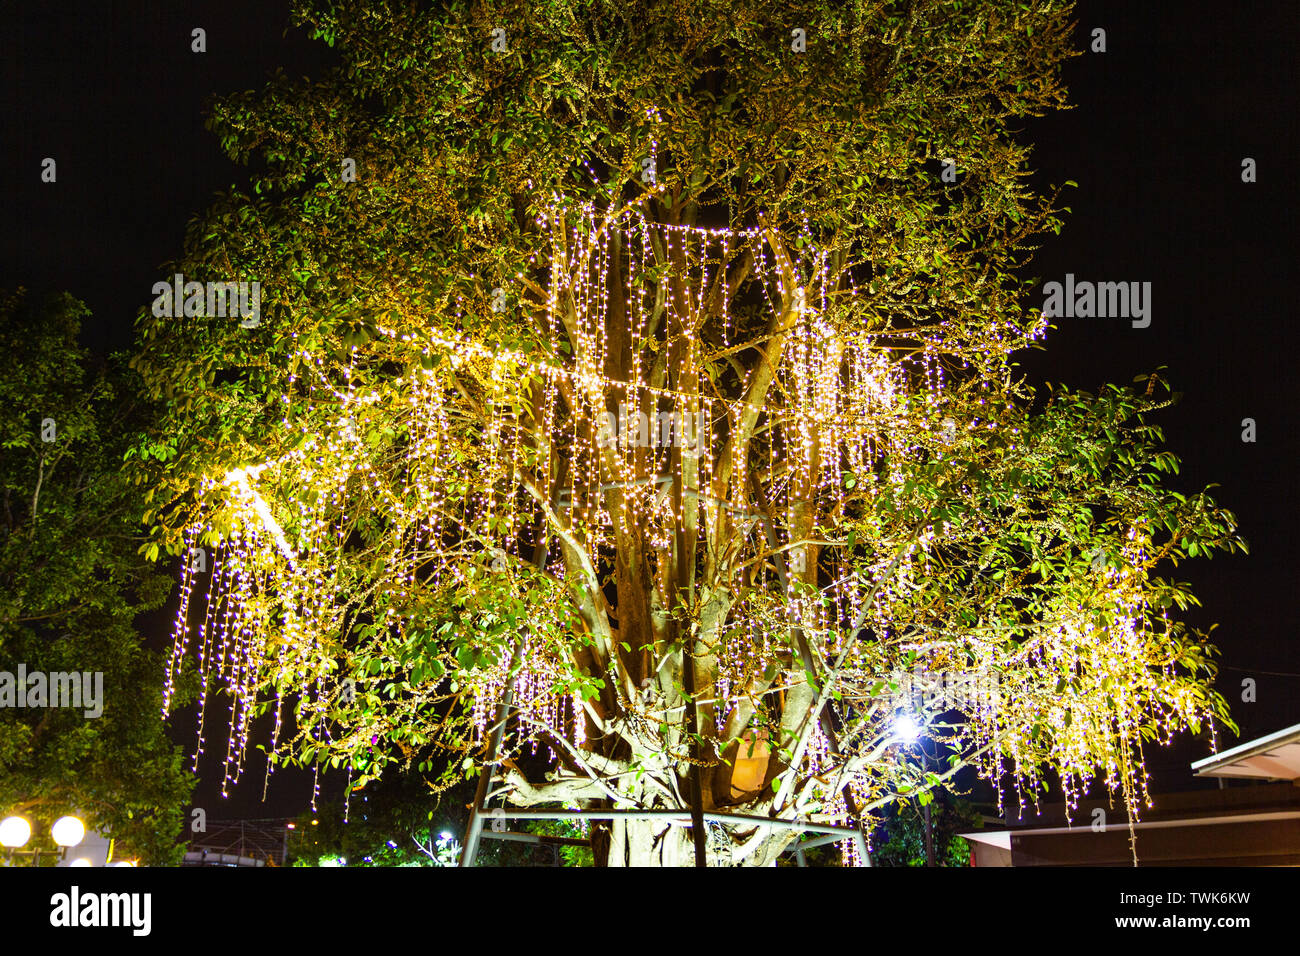 Dekorative outdoor string Lichter am Baum im Garten bei Nacht feste Zeit  Jahreszeit - dekorative Weihnachtsbeleuchtung - Frohes neues Jahr  Stockfotografie - Alamy